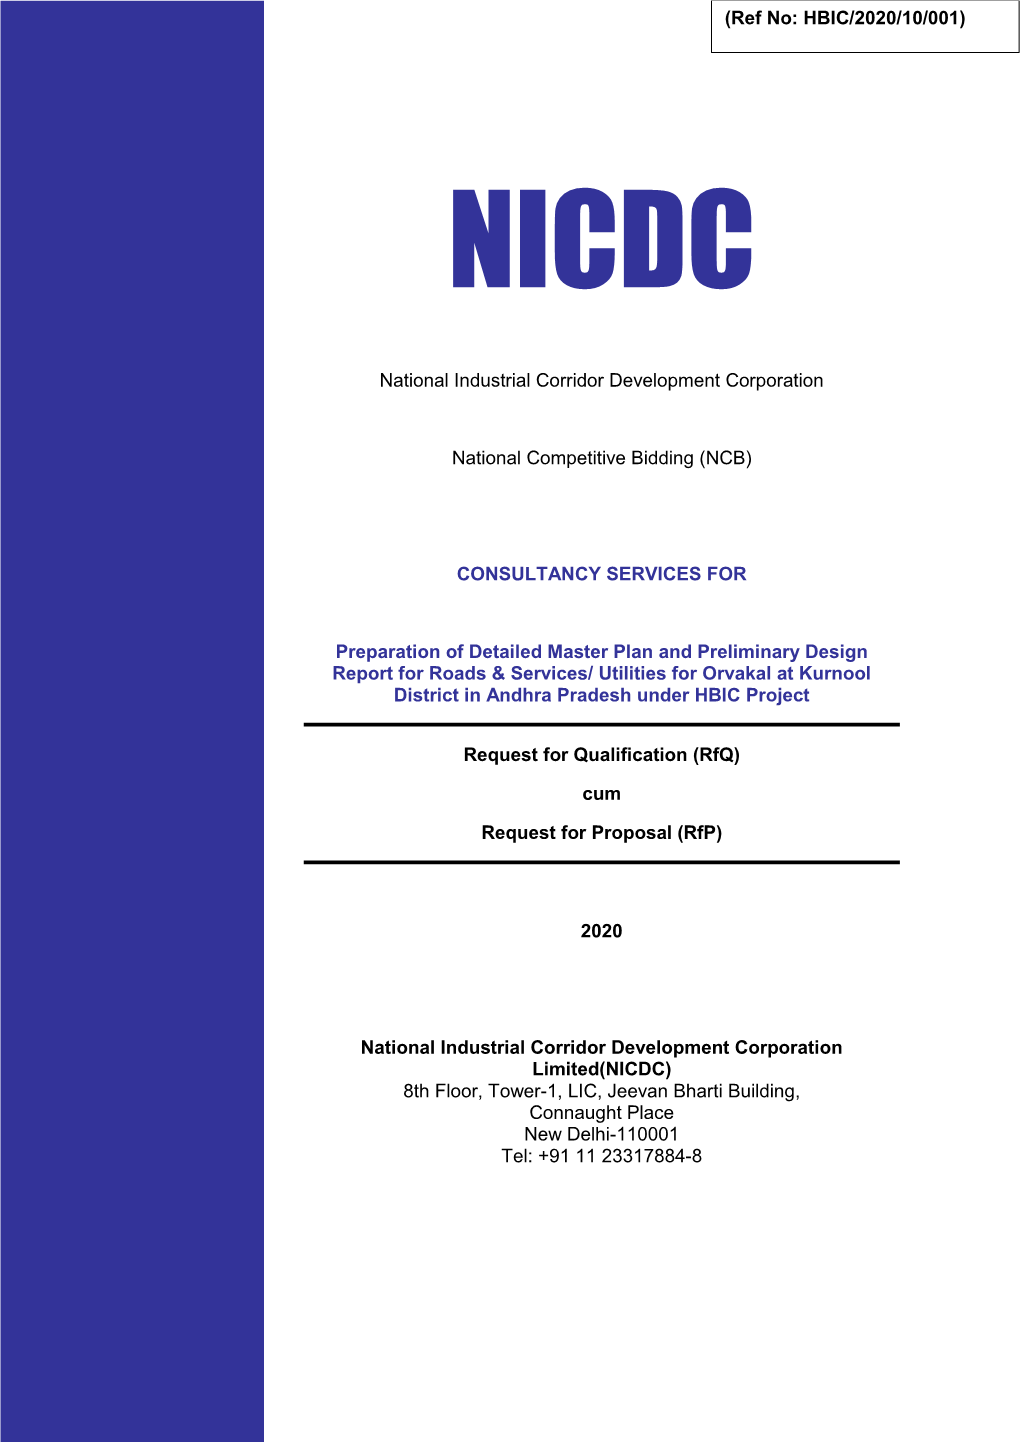 National Industrial Corridor Development Corporation